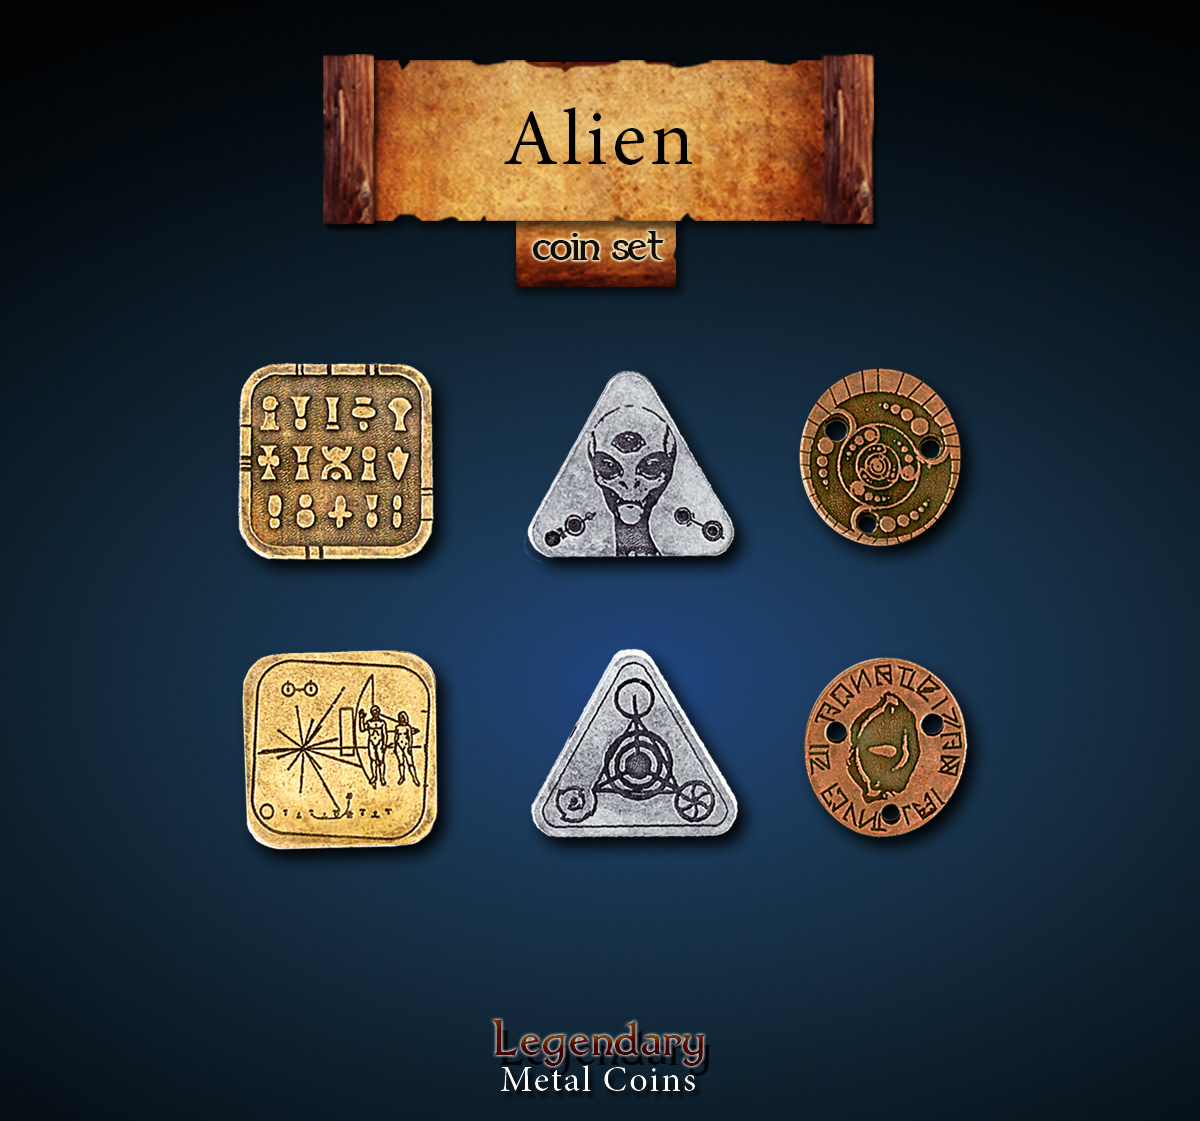 Legendary Metal Coins: Alien (24pcs)